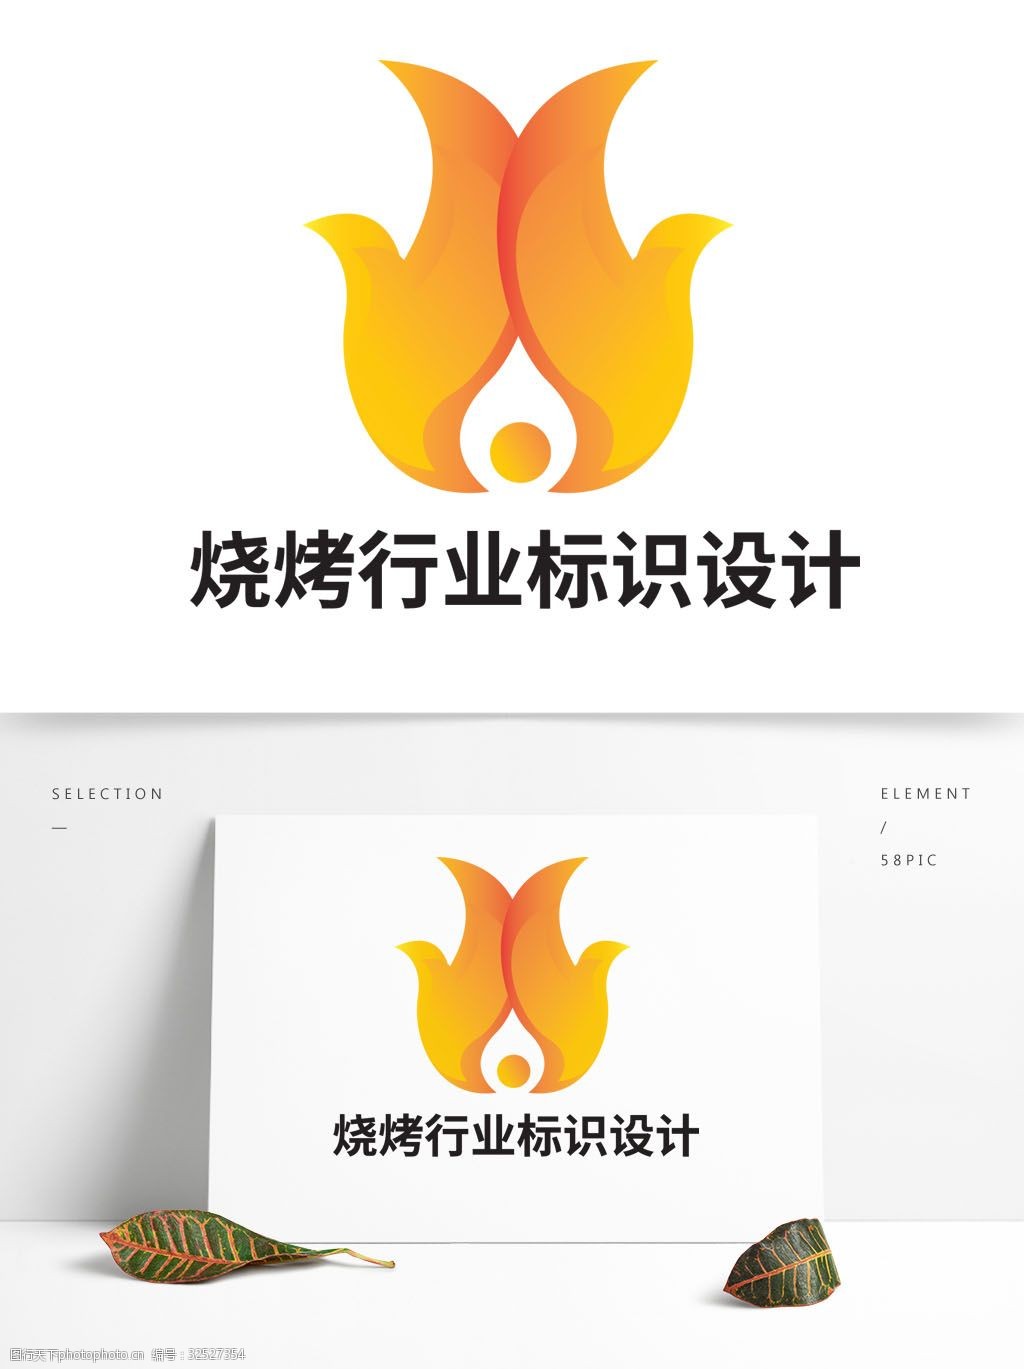 关键词:烧烤行业标识设计 烧烤 行业 标识 设计 火焰 火苗 红火